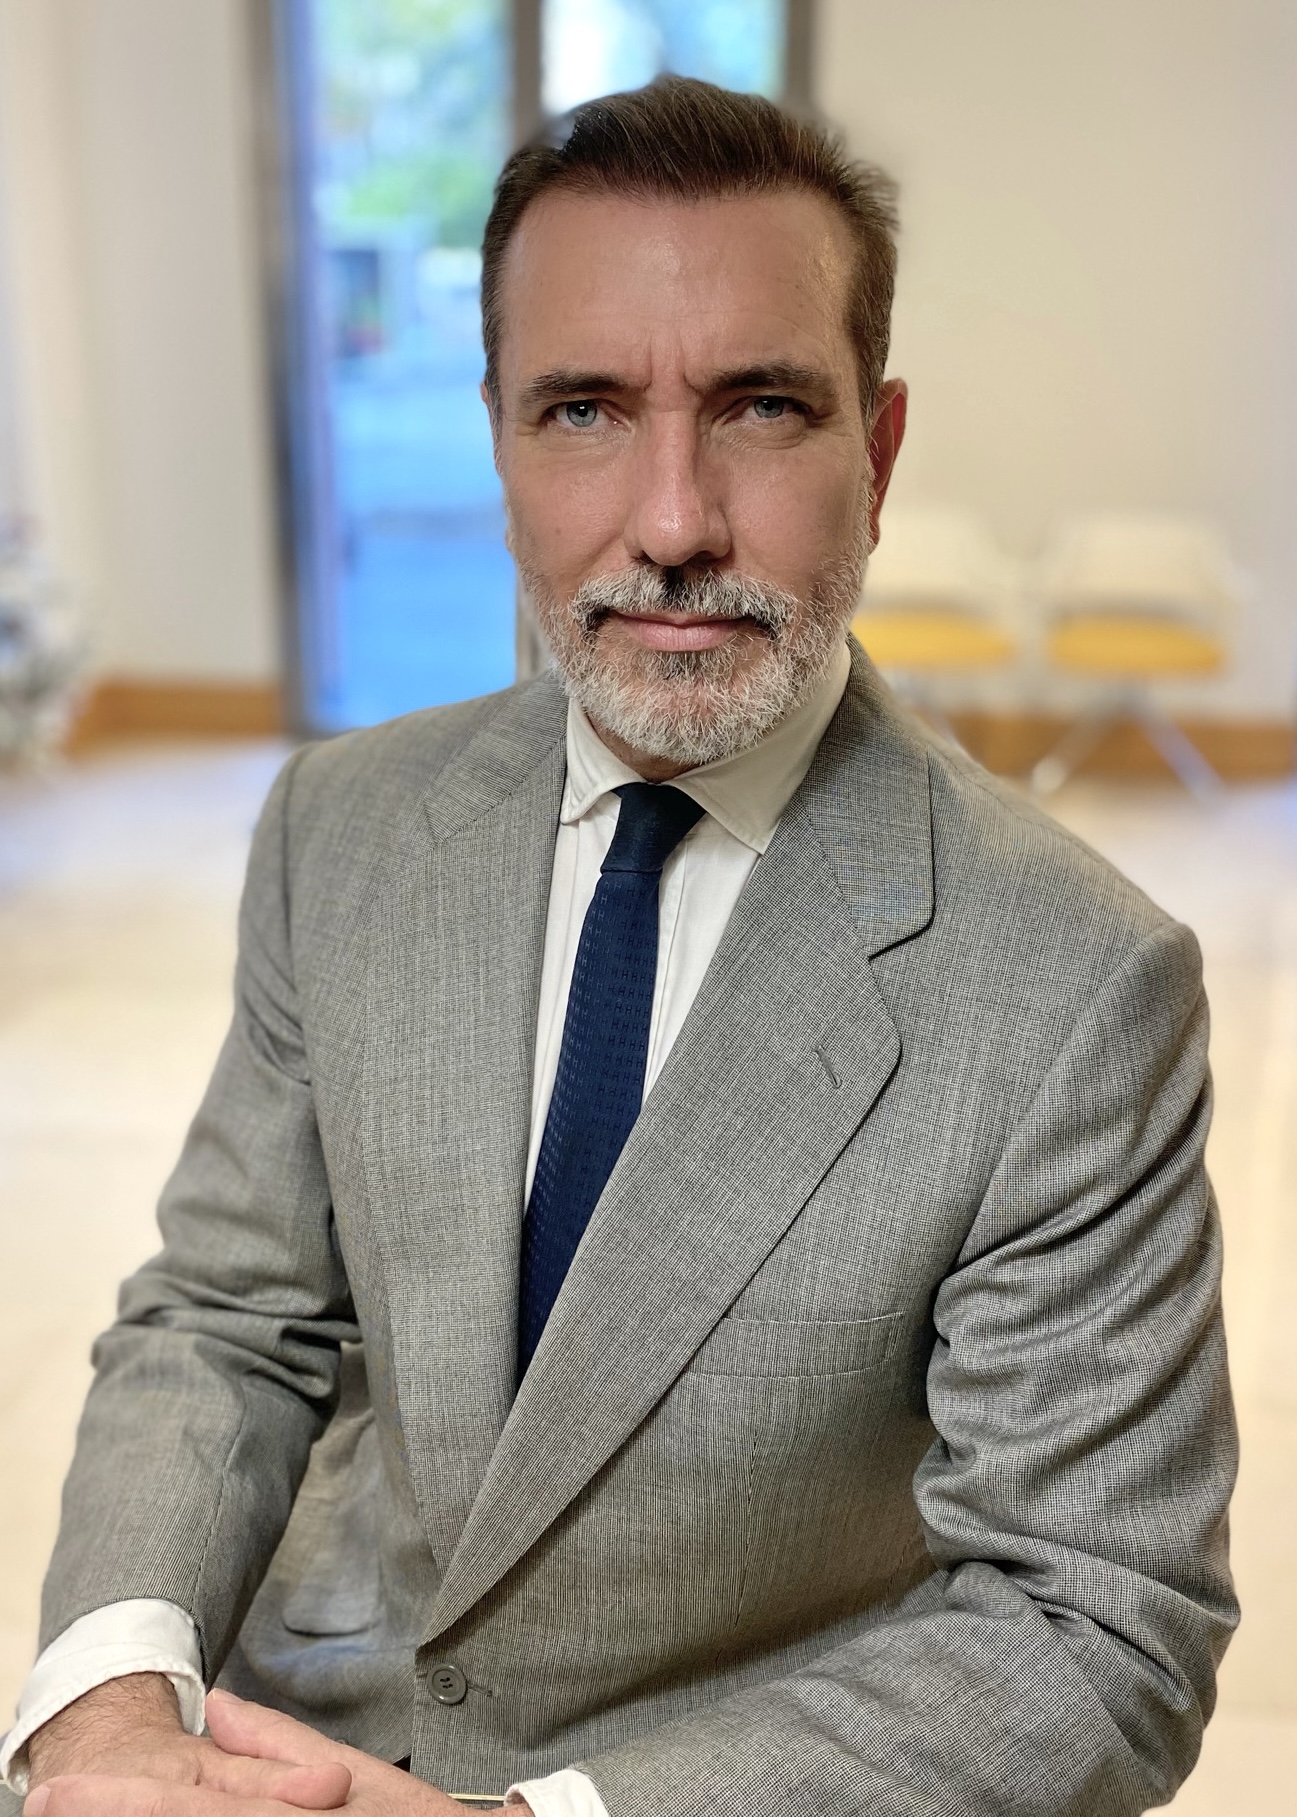 Carlos Alvear, Broker inmobiliario Seville Sotheby's International Realty